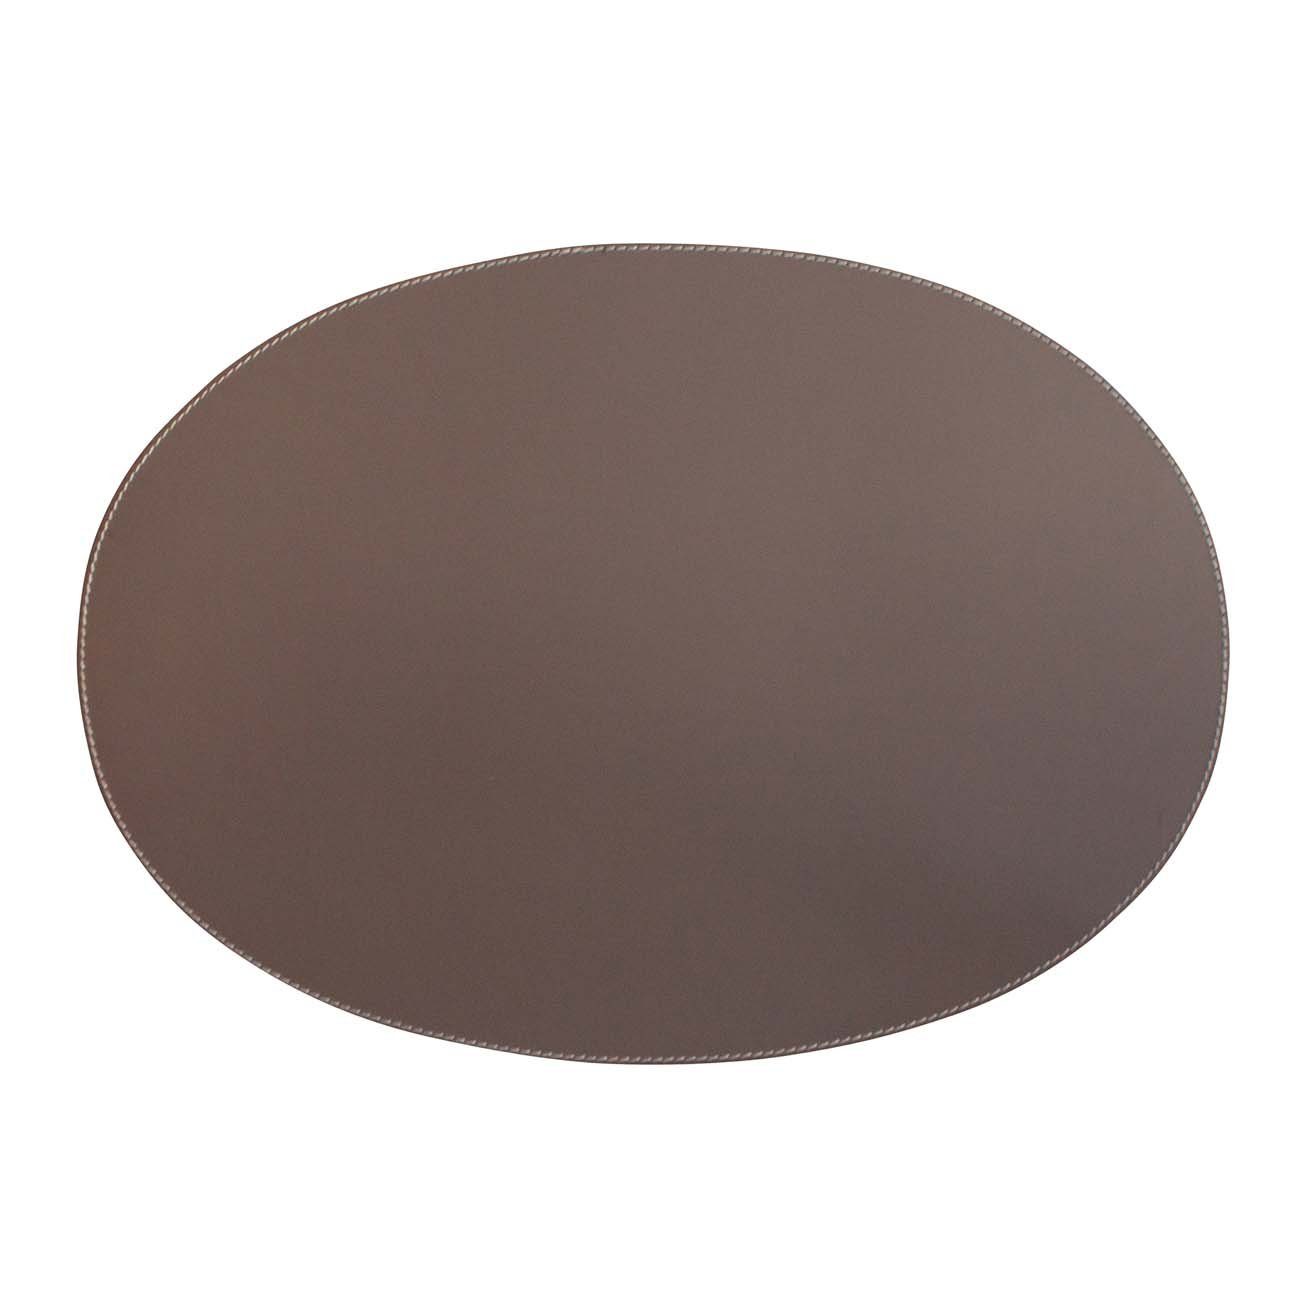 Braune Leder Tischsets online kaufen | OTTO